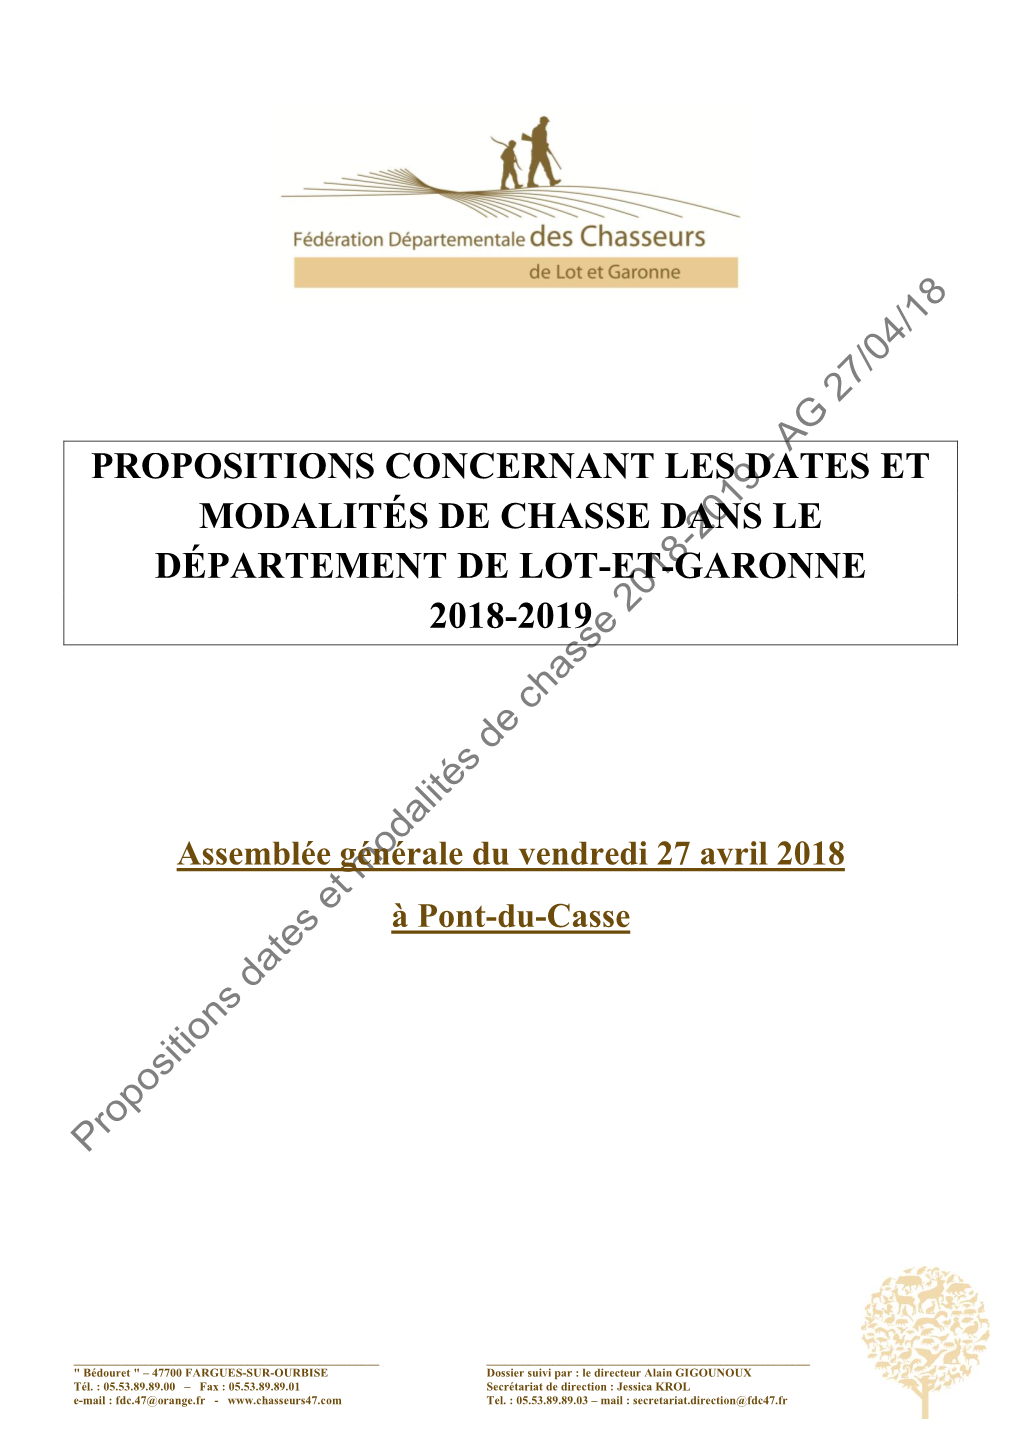 Propositions Concernant Les Dates Et Modalités De Chasse Dans Le Département De Lot-Et-Garonne 2018-2019